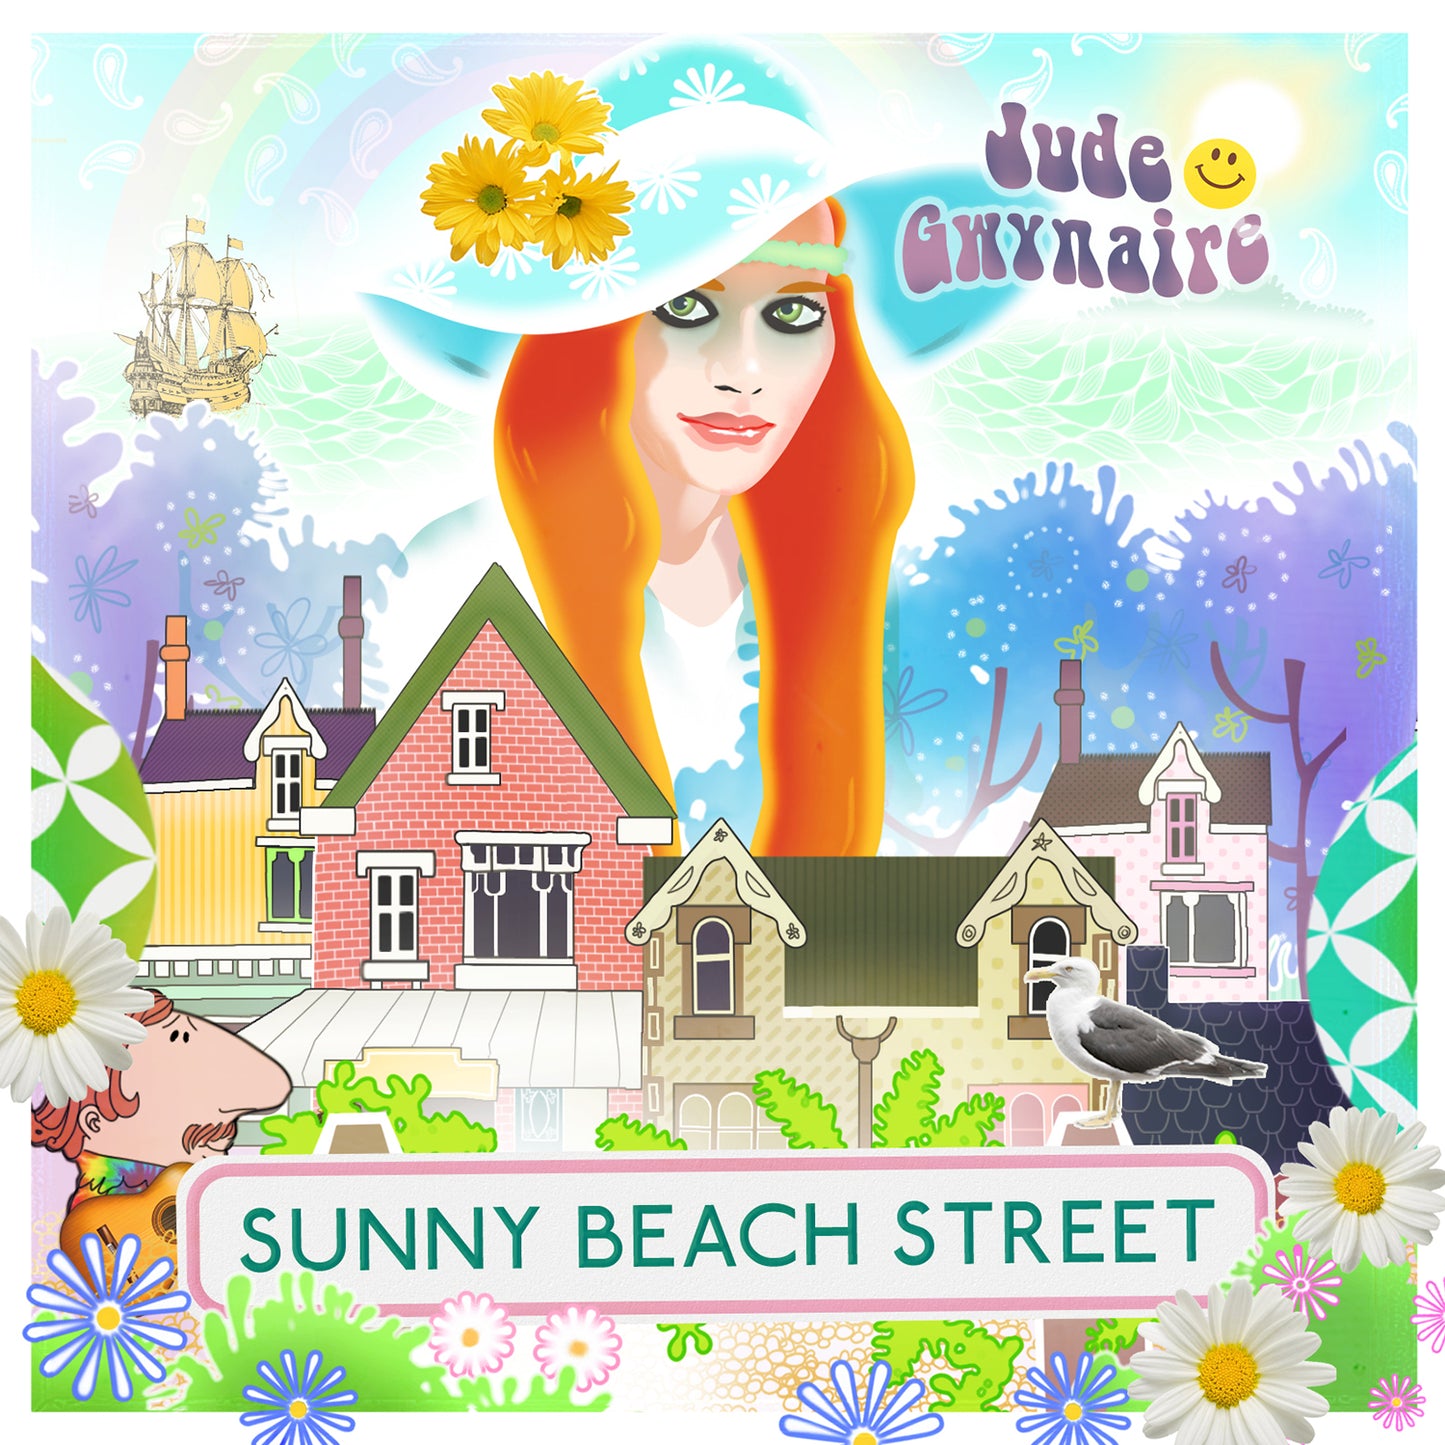 Sunny Beach Street